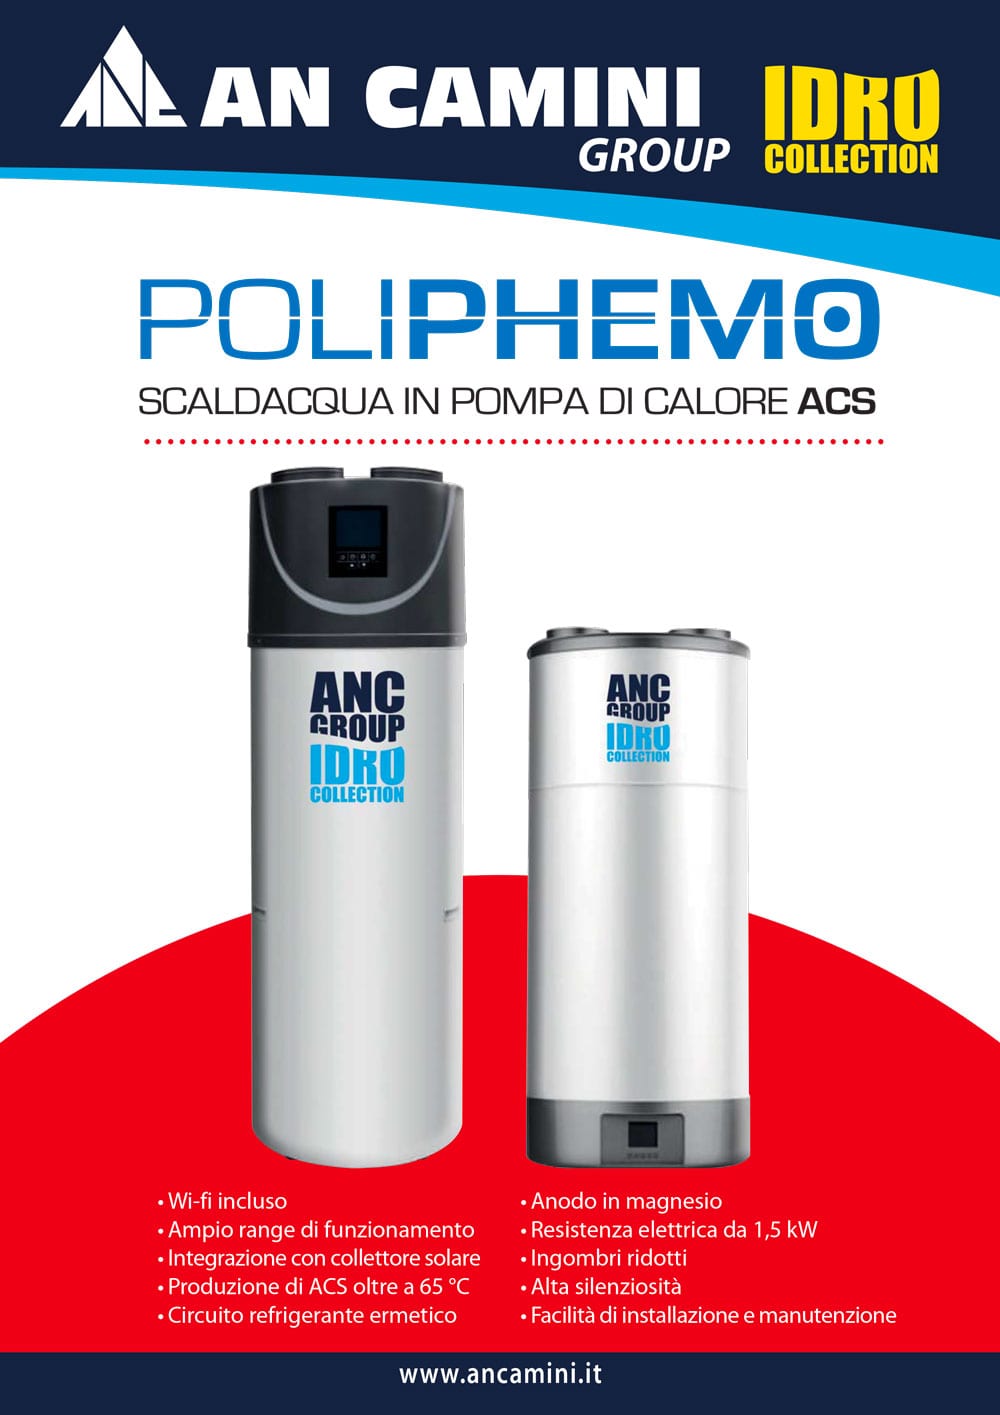 POLIPHEMO - Scaldacqua in pompa di calore ACS